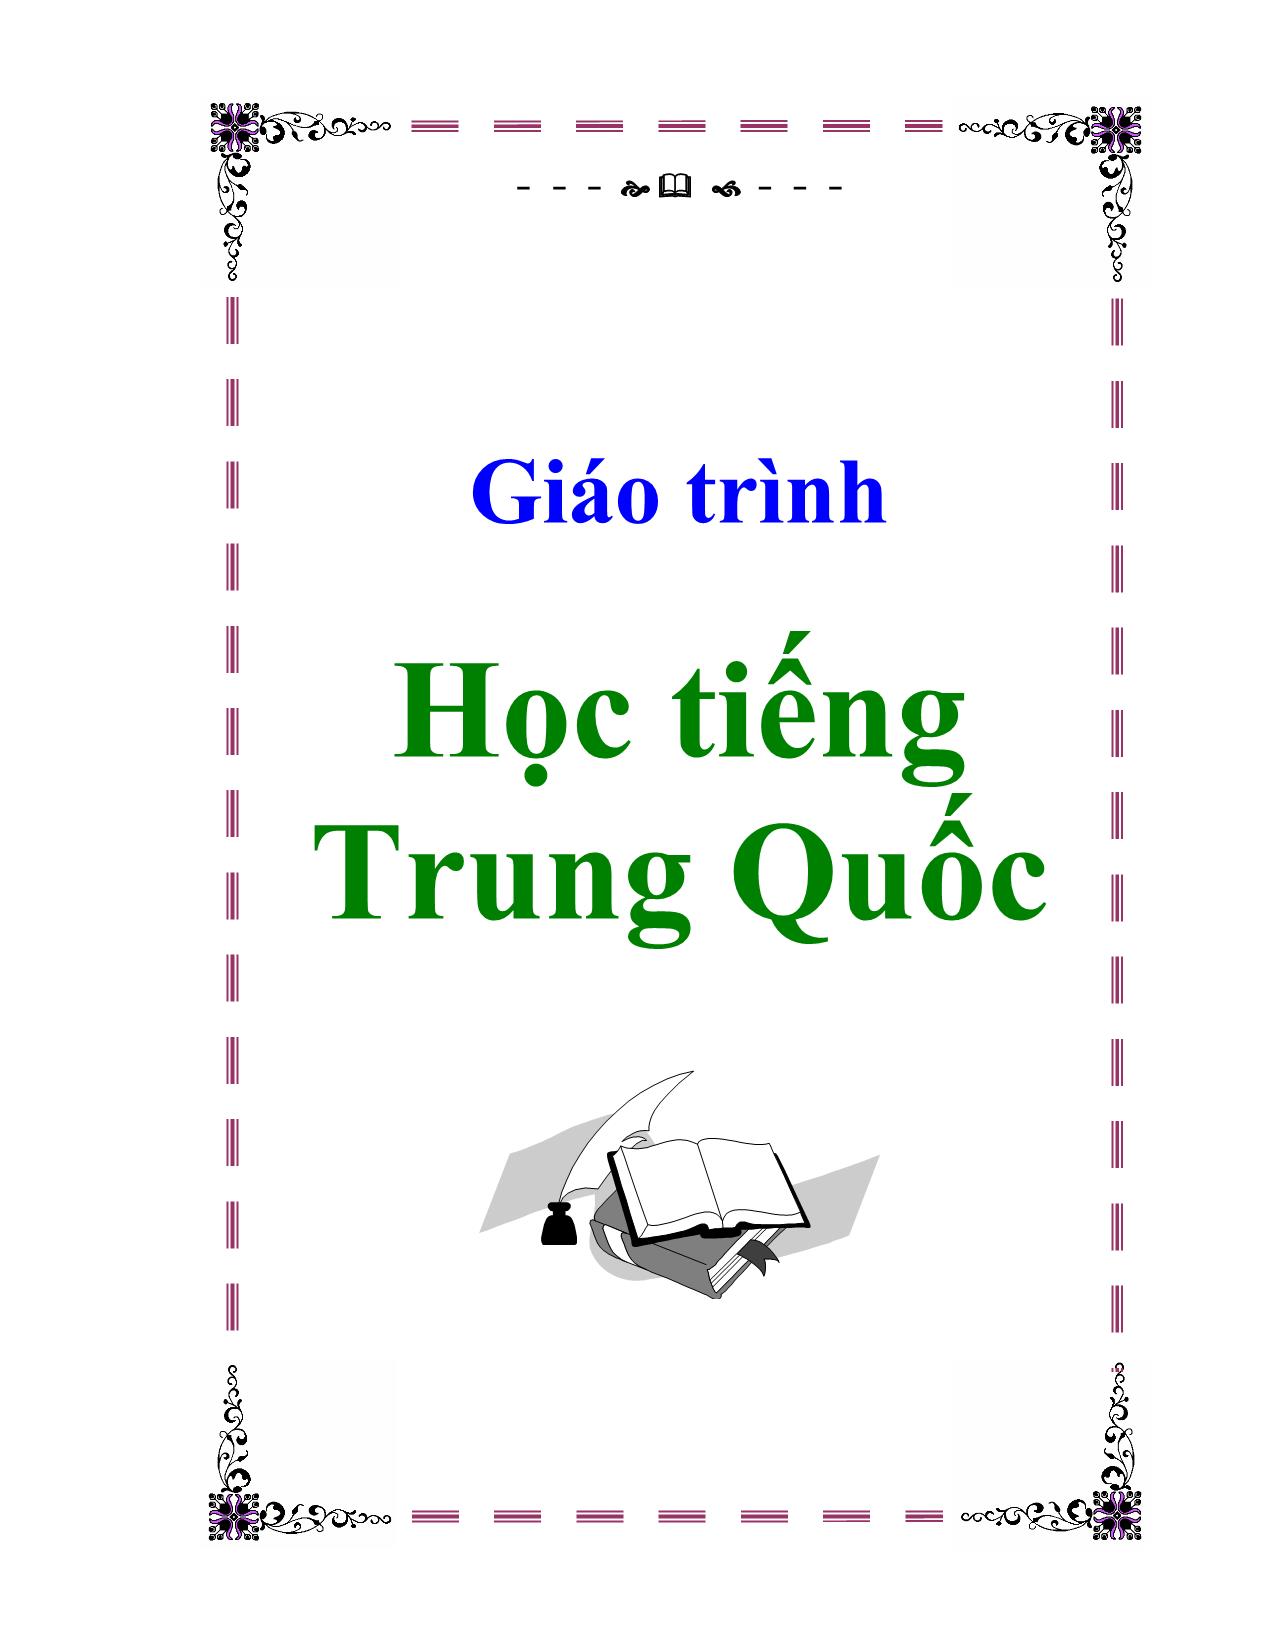 Giáo trình Học tiếng Trung Quốc trang 1